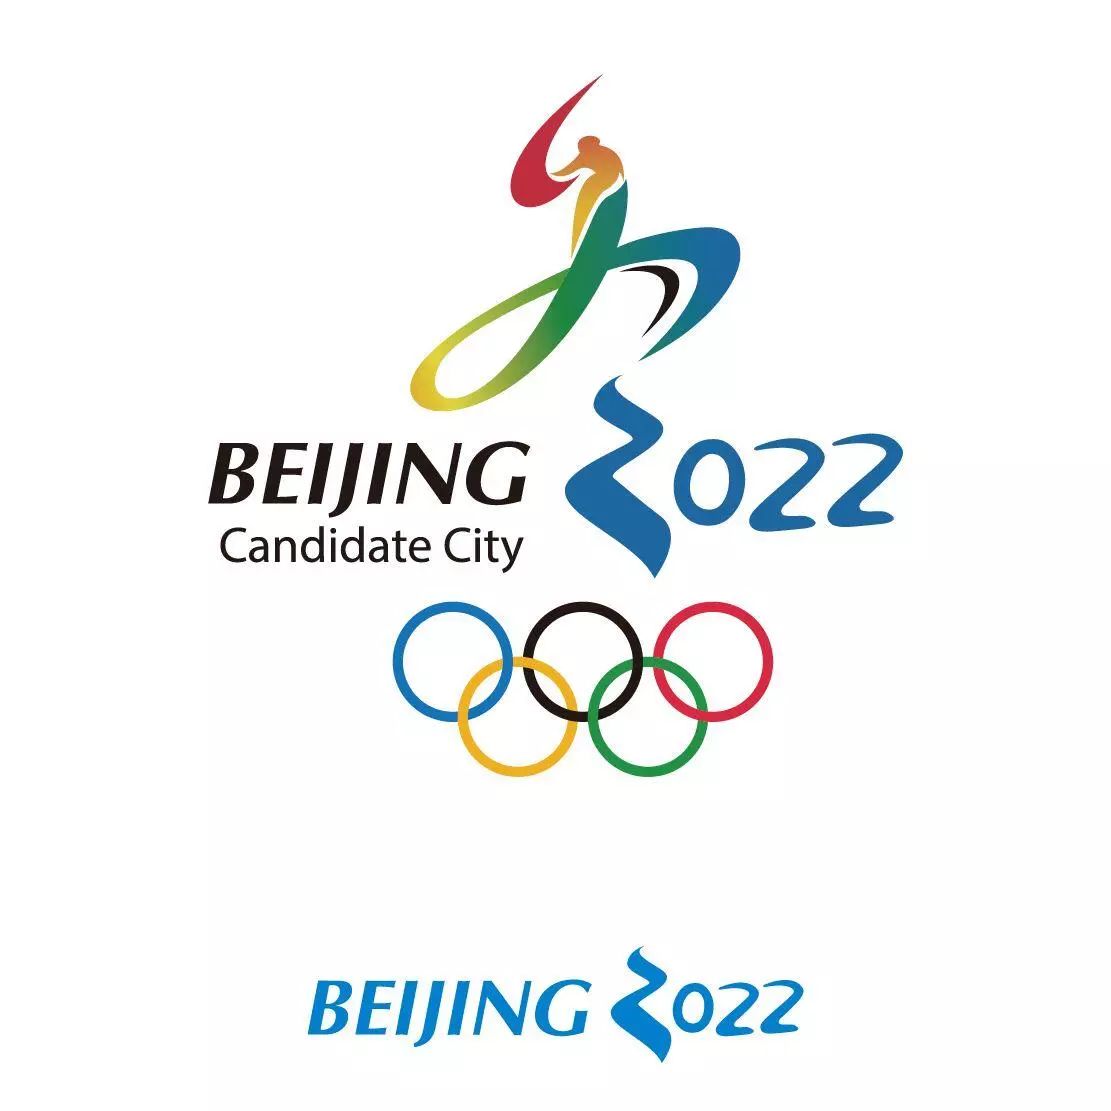 2022年冬奥徽宝图片